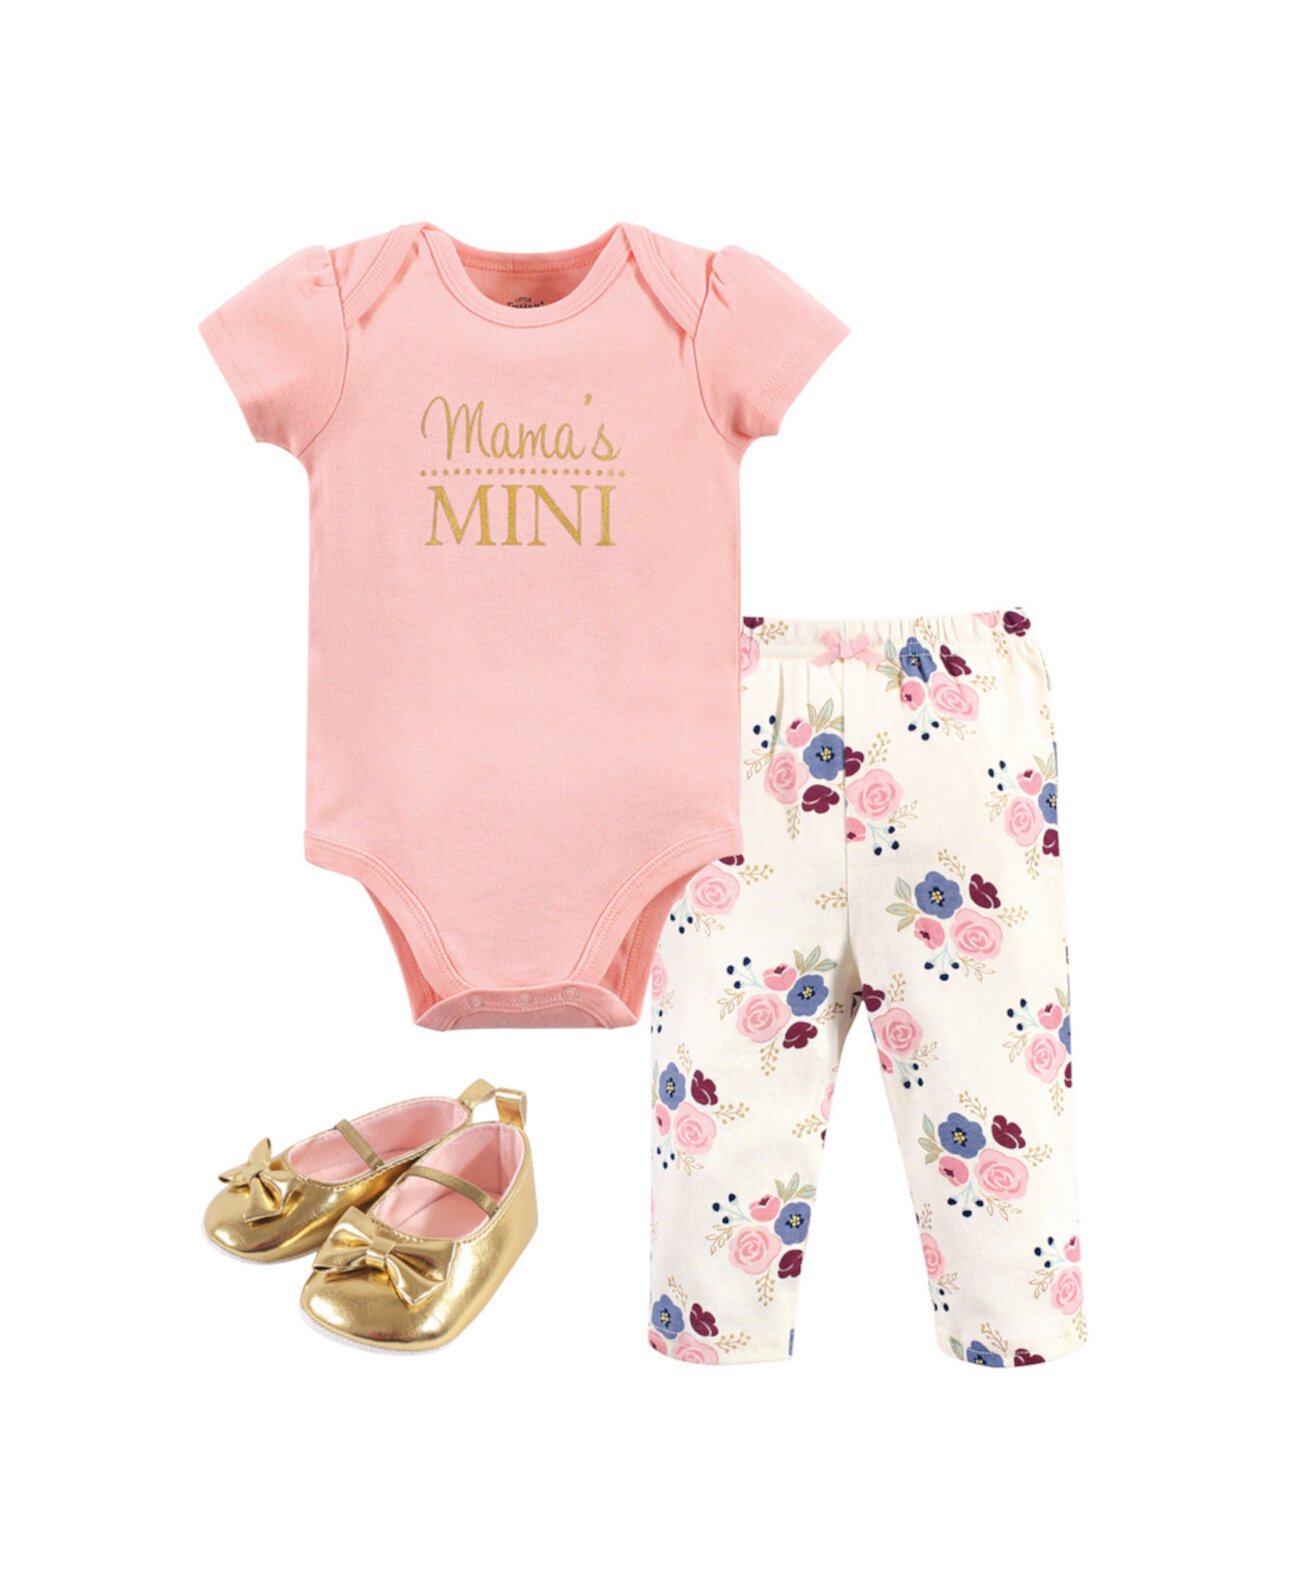 Мини-боди Baby Girls Mamas, брюки и комплект обуви, набор из 3 Little Treasure